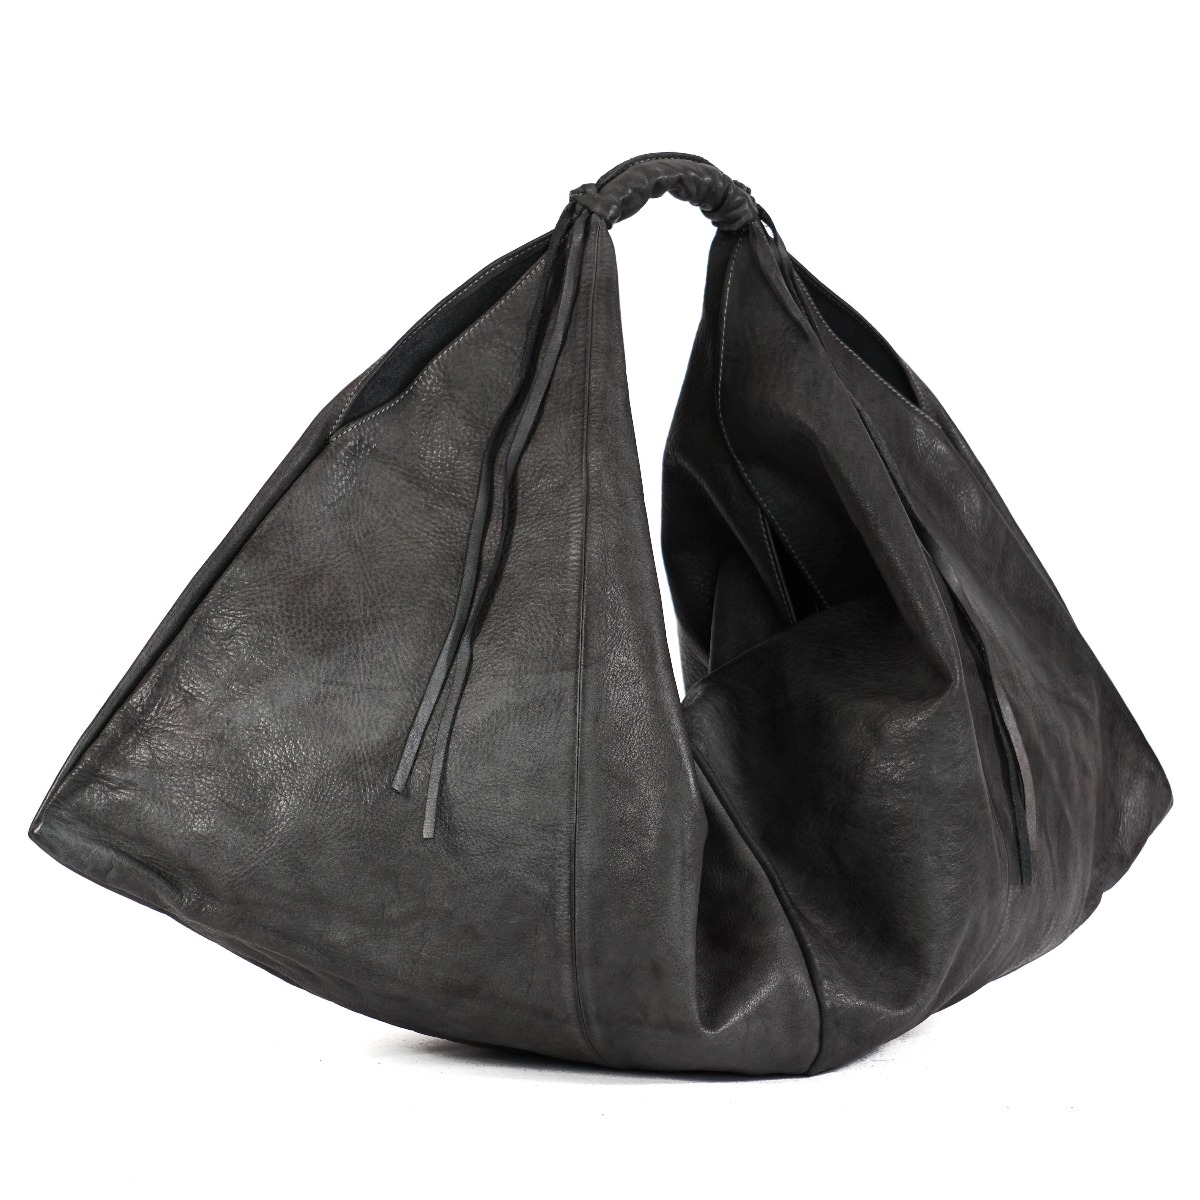 Large shoulder bag in gray color